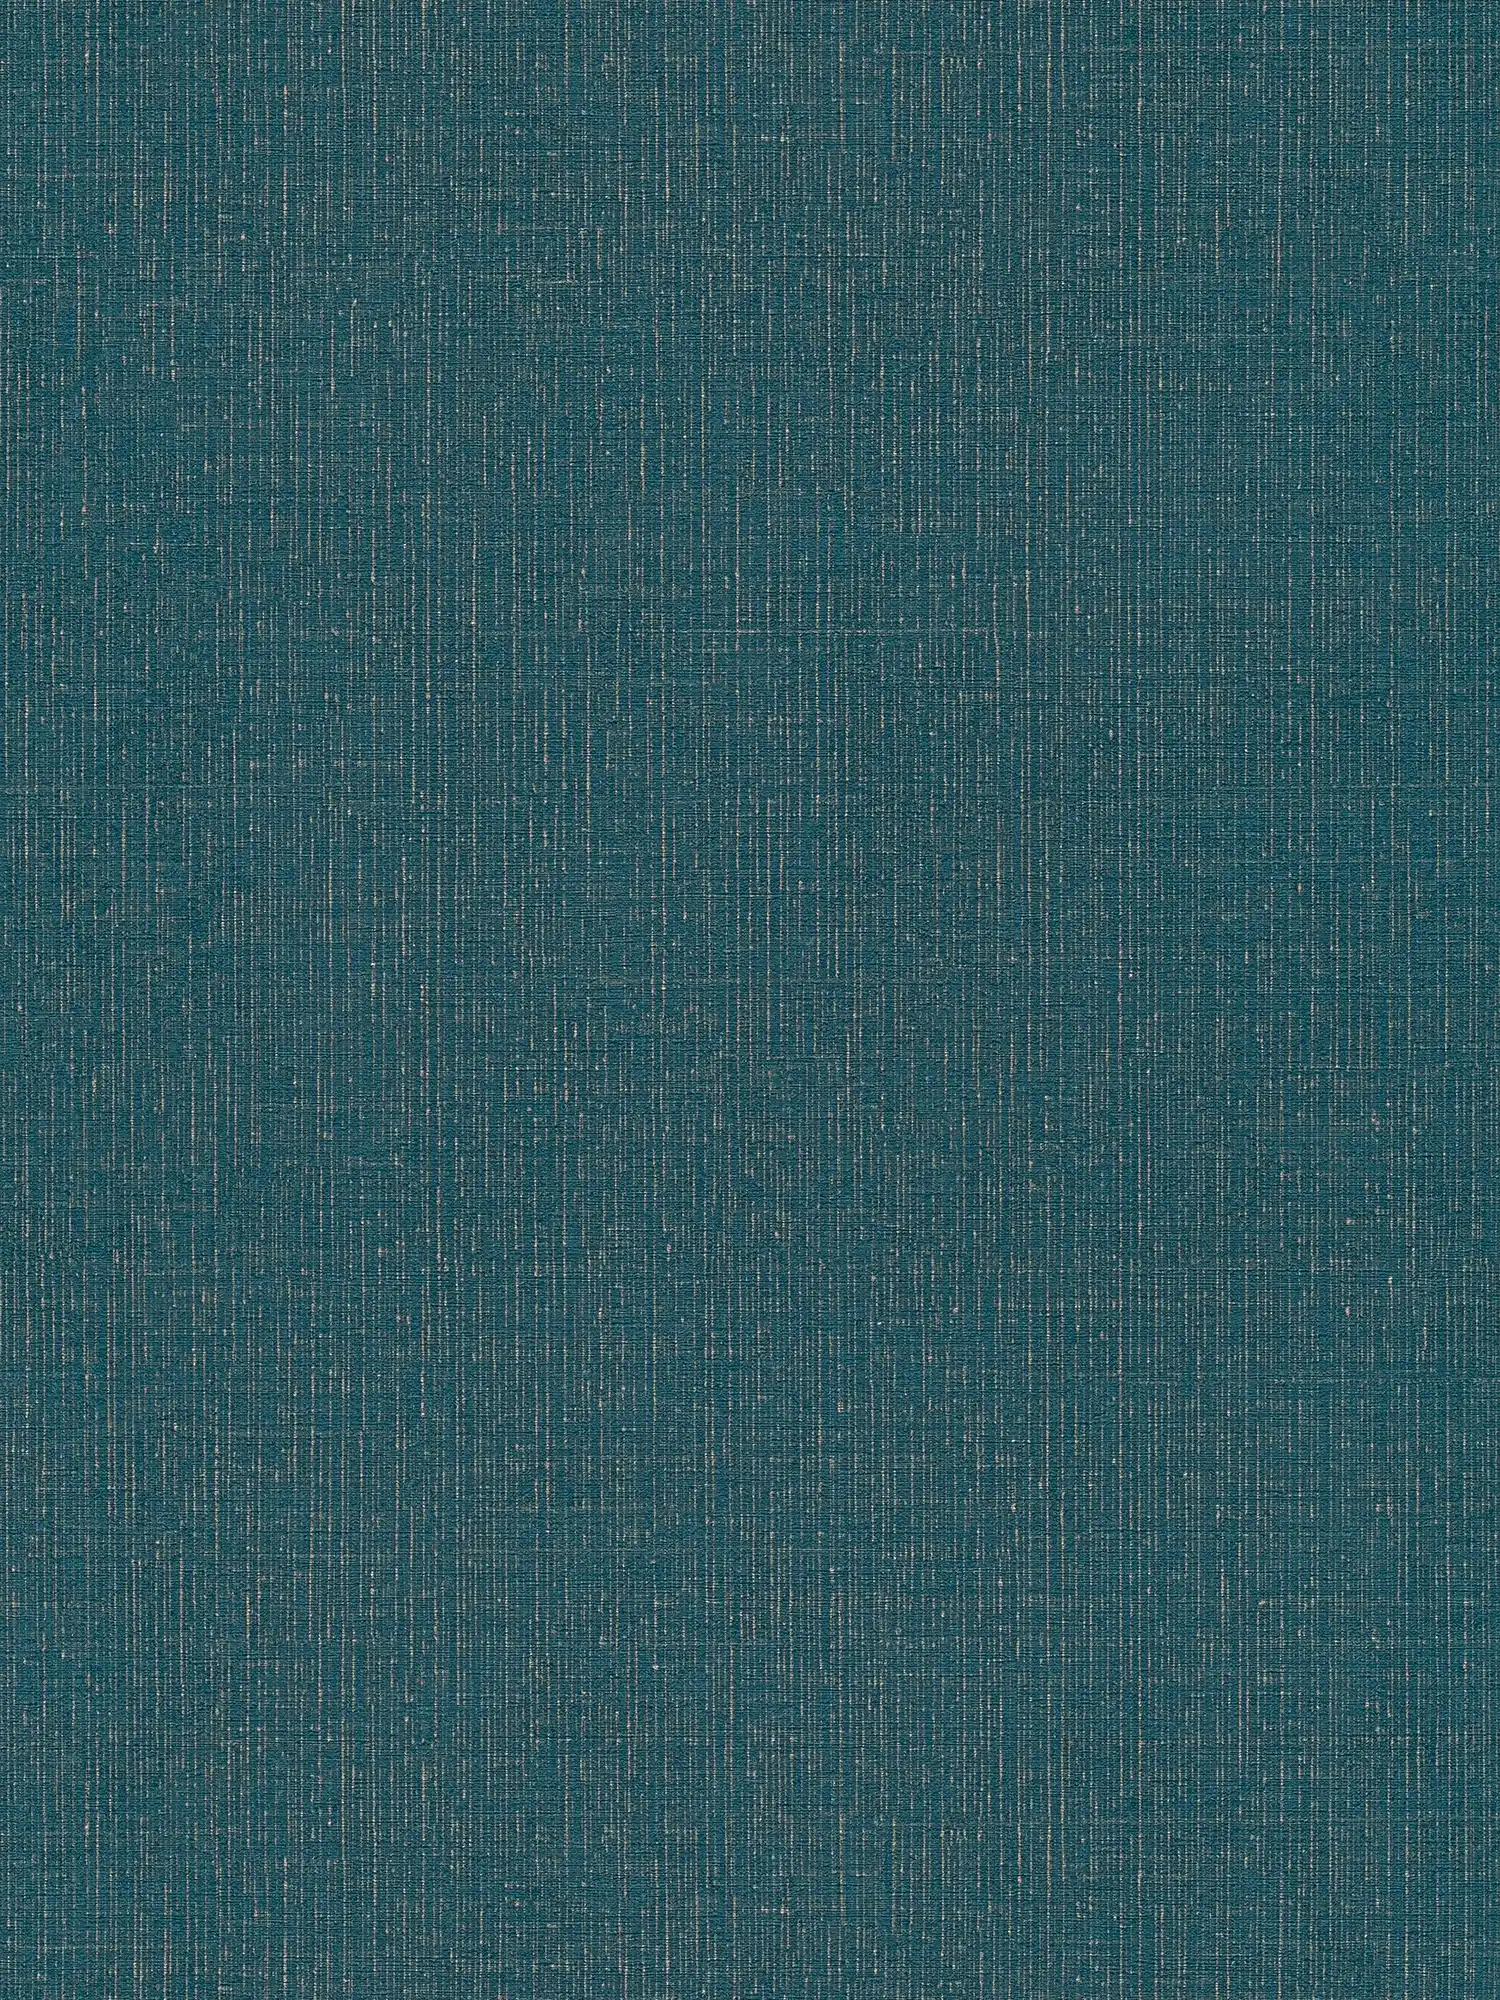 Pétrole Papier peint doré chiné avec structure textile - bleu, métallique
